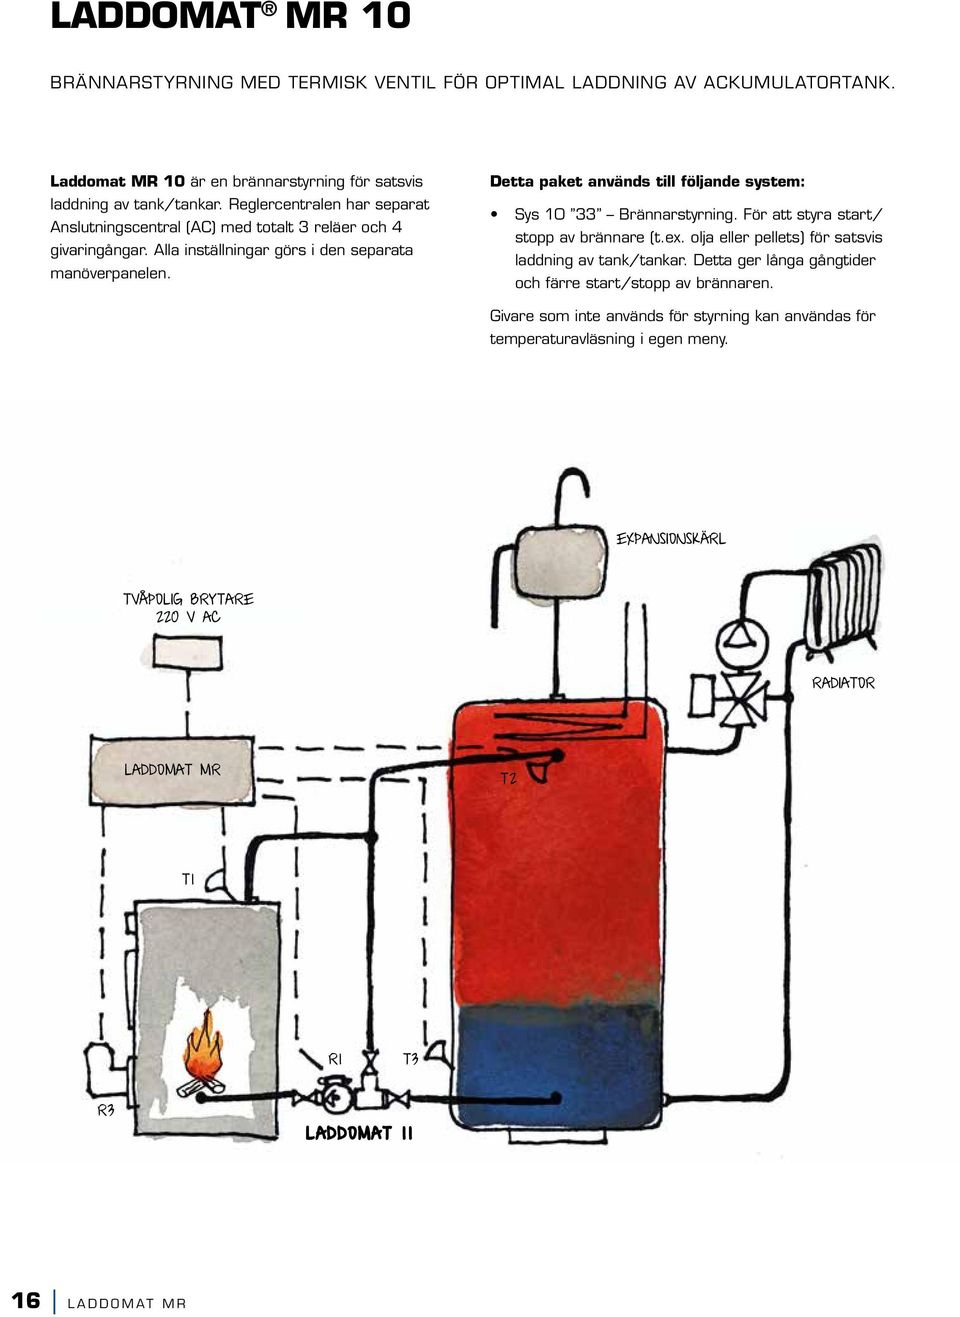 Detta paket används till följande system: Sys 10 33 Brännarstyrning. För att styra start/ stopp av brännare (t.ex. olja eller pellets) för satsvis laddning av tank/tankar.